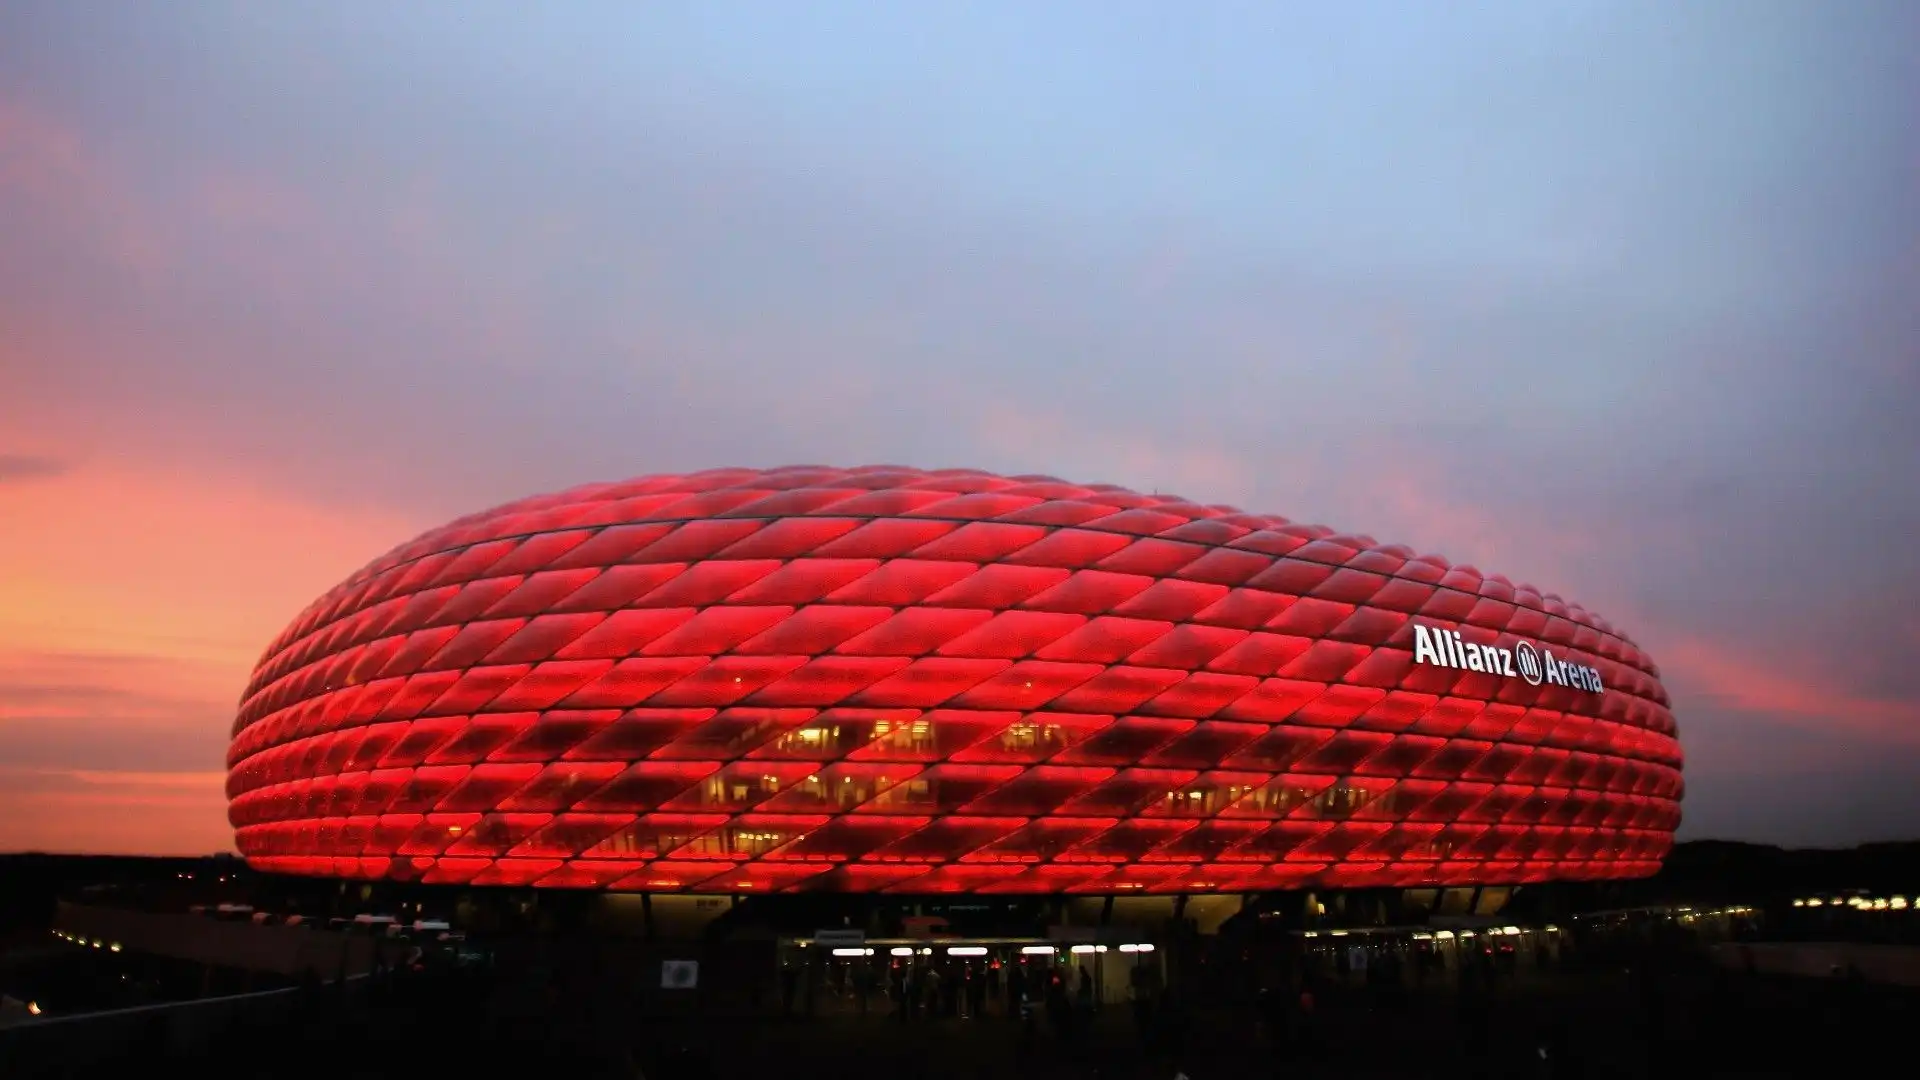 Allianz Arena - Monaco di Baviera, Germania: lo stadio del Bayern Monaco, noto per la sua architettura moderna e il suo sistema di illuminazione esterno a LED. Un gioiello dell'innovazione